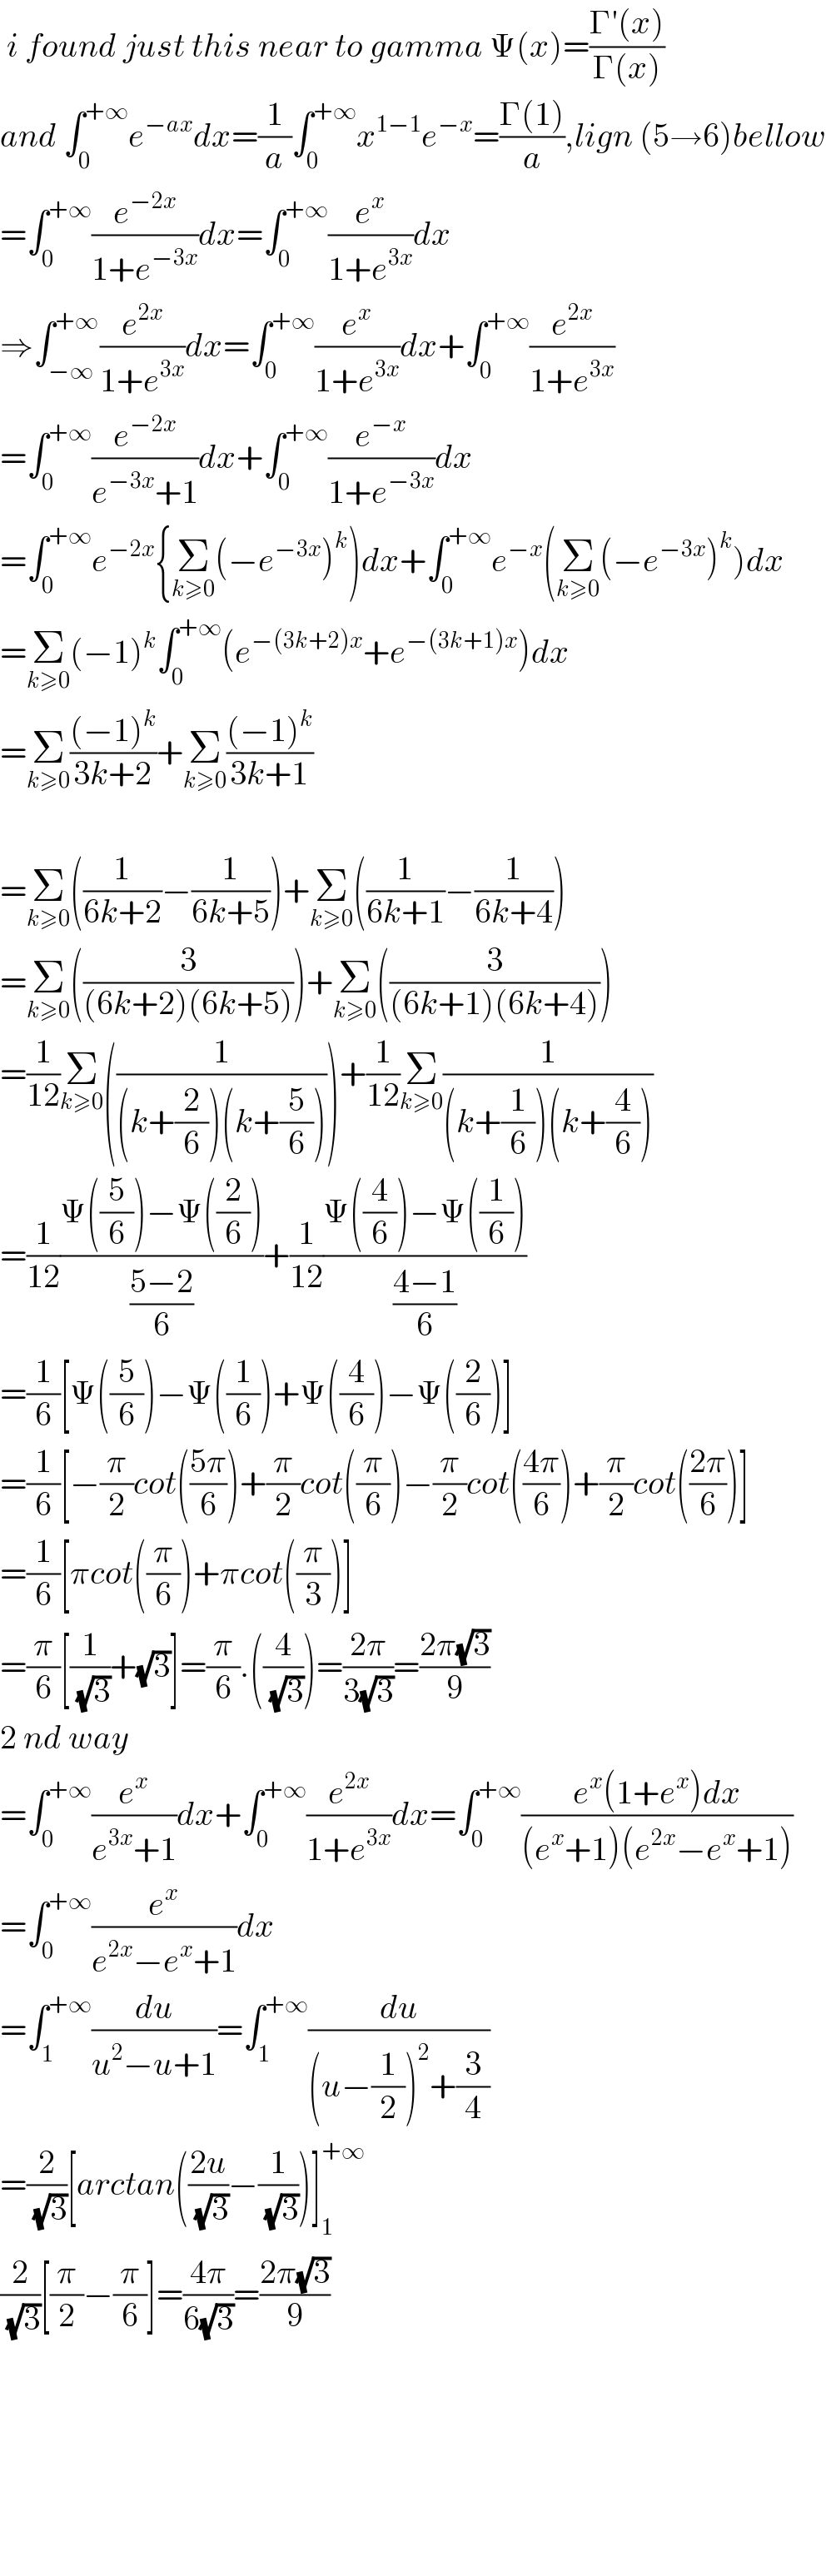  i found just this near to gamma Ψ(x)=((Γ′(x))/(Γ(x)))     and ∫_0 ^(+∞) e^(−ax) dx=(1/a)∫_0 ^(+∞) x^(1−1) e^(−x) =((Γ(1))/a),lign (5→6)bellow  =∫_0 ^(+∞) (e^(−2x) /(1+e^(−3x) ))dx=∫_0 ^(+∞) (e^x /(1+e^(3x) ))dx  ⇒∫_(−∞) ^(+∞) (e^(2x) /(1+e^(3x) ))dx=∫_0 ^(+∞) (e^x /(1+e^(3x) ))dx+∫_0 ^(+∞) (e^(2x) /(1+e^(3x) ))  =∫_0 ^(+∞) (e^(−2x) /(e^(−3x) +1))dx+∫_0 ^(+∞) (e^(−x) /(1+e^(−3x) ))dx  =∫_0 ^(+∞) e^(−2x) {Σ_(k≥0) (−e^(−3x) )^k )dx+∫_0 ^(+∞) e^(−x) (Σ_(k≥0) (−e^(−3x) )^k )dx  =Σ_(k≥0) (−1)^k ∫_0 ^(+∞) (e^(−(3k+2)x) +e^(−(3k+1)x) )dx  =Σ_(k≥0) (((−1)^k )/(3k+2))+Σ_(k≥0) (((−1)^k )/(3k+1))    =Σ_(k≥0) ((1/(6k+2))−(1/(6k+5)))+Σ_(k≥0) ((1/(6k+1))−(1/(6k+4)))  =Σ_(k≥0) ((3/((6k+2)(6k+5))))+Σ_(k≥0) ((3/((6k+1)(6k+4))))  =(1/(12))Σ_(k≥0) ((1/((k+(2/6))(k+(5/6)))))+(1/(12))Σ_(k≥0) (1/((k+(1/6))(k+(4/6))))  =(1/(12))((Ψ((5/6))−Ψ((2/6)))/((5−2)/6))+(1/(12))((Ψ((4/6))−Ψ((1/6)))/((4−1)/6))  =(1/6)[Ψ((5/6))−Ψ((1/6))+Ψ((4/6))−Ψ((2/6))]  =(1/6)[−(π/2)cot(((5π)/6))+(π/2)cot((π/6))−(π/2)cot(((4π)/6))+(π/2)cot(((2π)/6))]  =(1/6)[πcot((π/6))+πcot((π/3))]  =(π/6)[(1/(√3))+(√3)]=(π/6).((4/(√3)))=((2π)/(3(√3)))=((2π(√3))/9)  2 nd way  =∫_0 ^(+∞) (e^x /(e^(3x) +1))dx+∫_0 ^(+∞) (e^(2x) /(1+e^(3x) ))dx=∫_0 ^(+∞) ((e^x (1+e^x )dx)/((e^x +1)(e^(2x) −e^x +1)))  =∫_0 ^(+∞) (e^x /(e^(2x) −e^x +1))dx  =∫_1 ^(+∞) (du/(u^2 −u+1))=∫_1 ^(+∞) (du/((u−(1/2))^2 +(3/4)))  =(2/(√3))[arctan(((2u)/(√3))−(1/(√3)))]_1 ^(+∞)   (2/(√3))[(π/2)−(π/6)]=((4π)/(6(√3)))=((2π(√3))/9)            